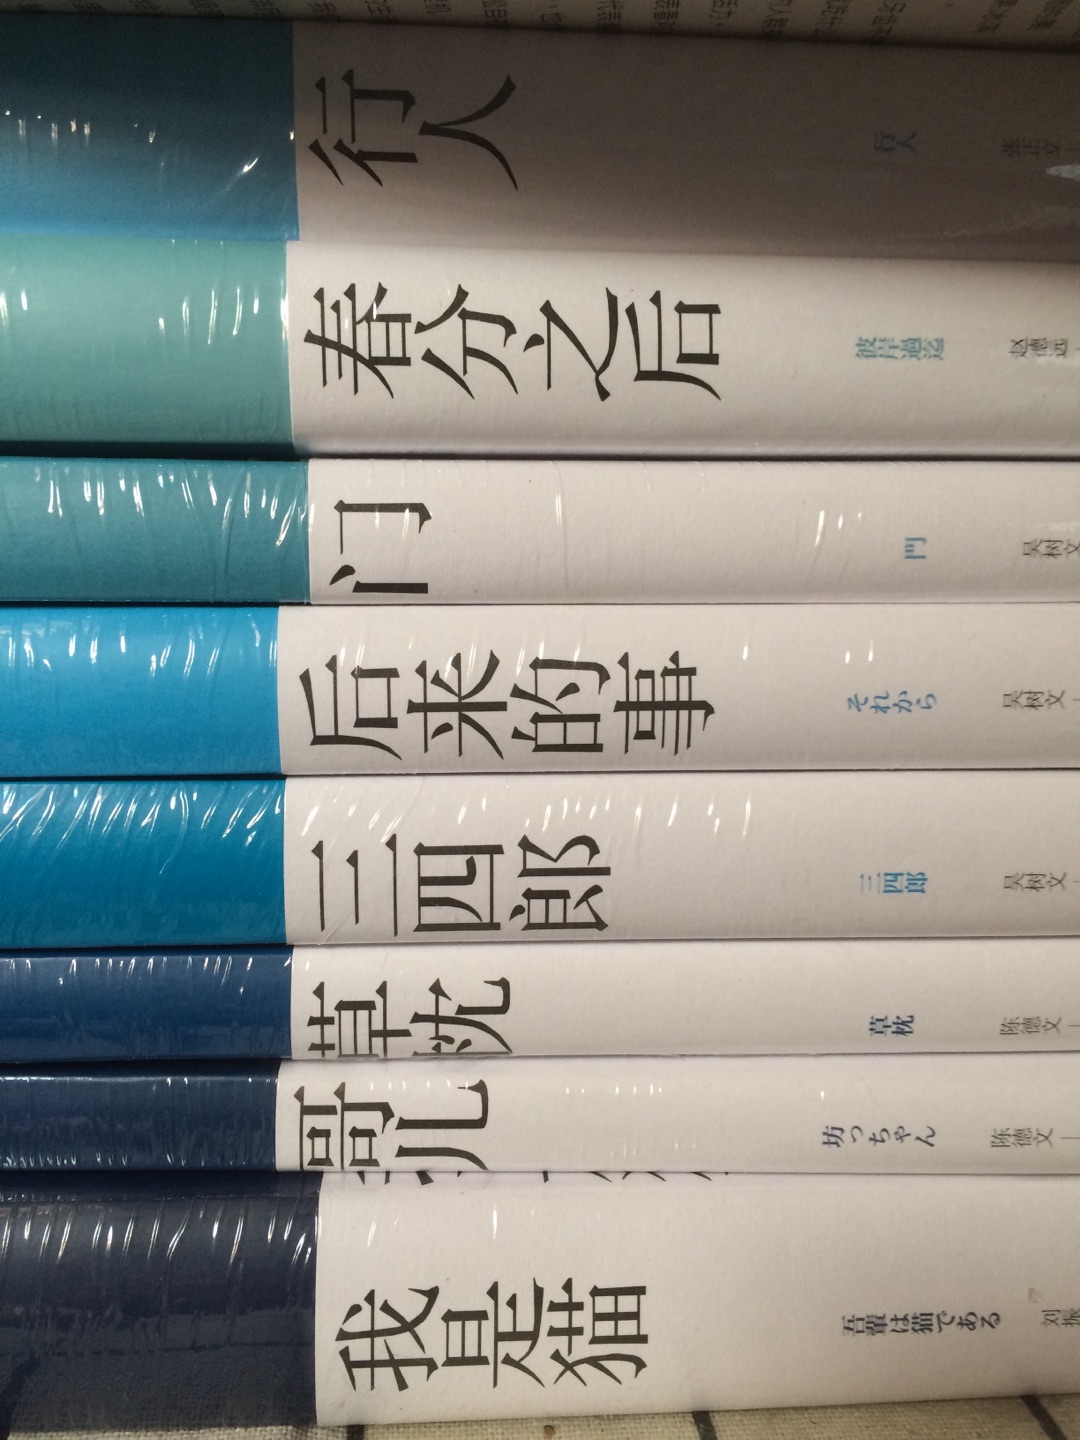 趁着618大促买了一波夏目漱石，书脊的颜色深浅是按照作品的时间先后顺序来拍的，很好玩儿呐。